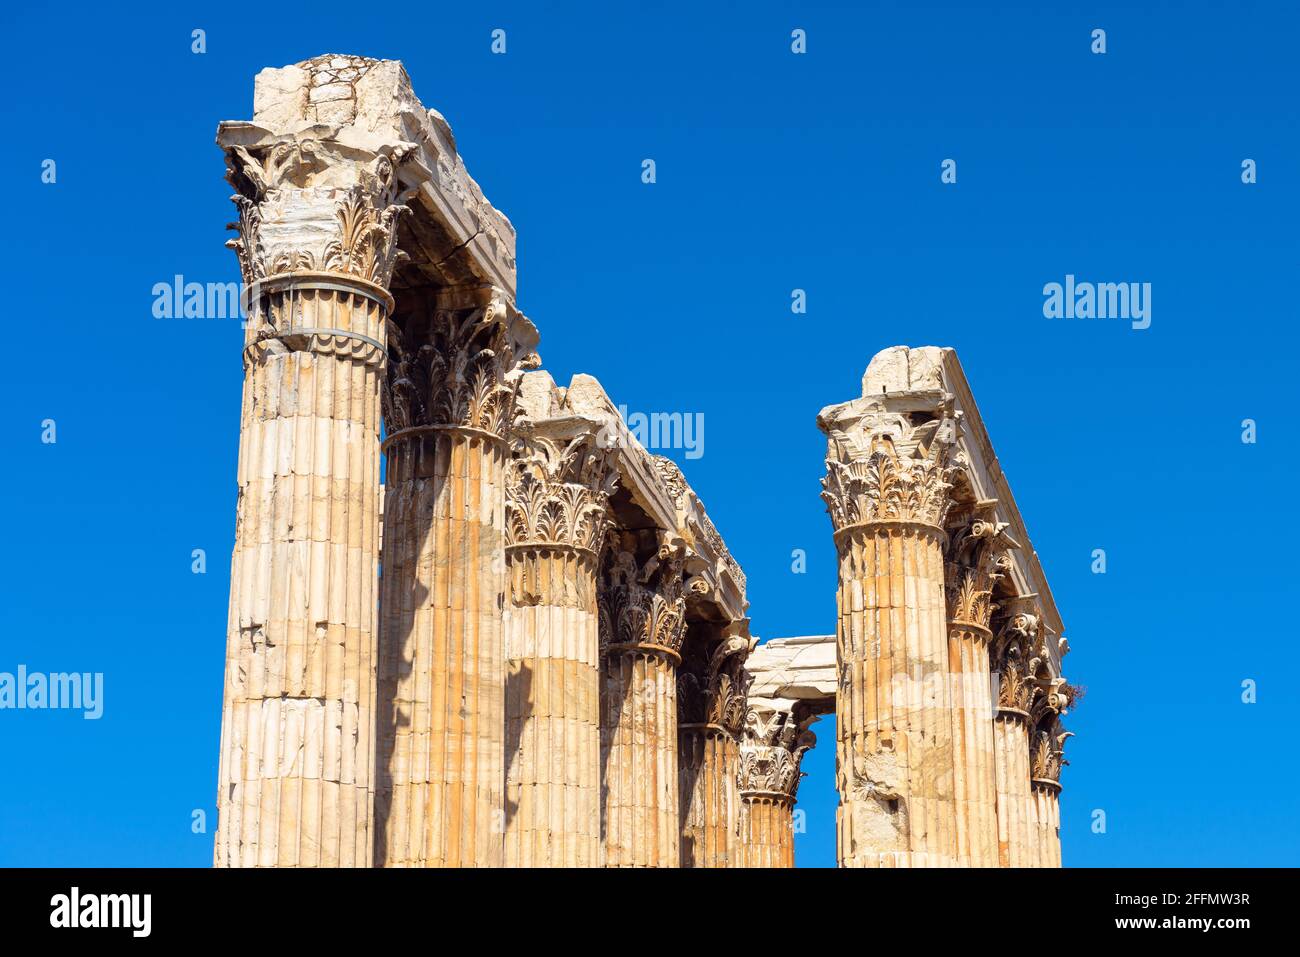 Tempel des Olympischen Zeus, Athen, Griechenland. Klassische korinthische Säulen auf blauem Himmel Hintergrund. Altes griechisches Gebäude von Zeus oder Olympieion ist berühmt l Stockfoto